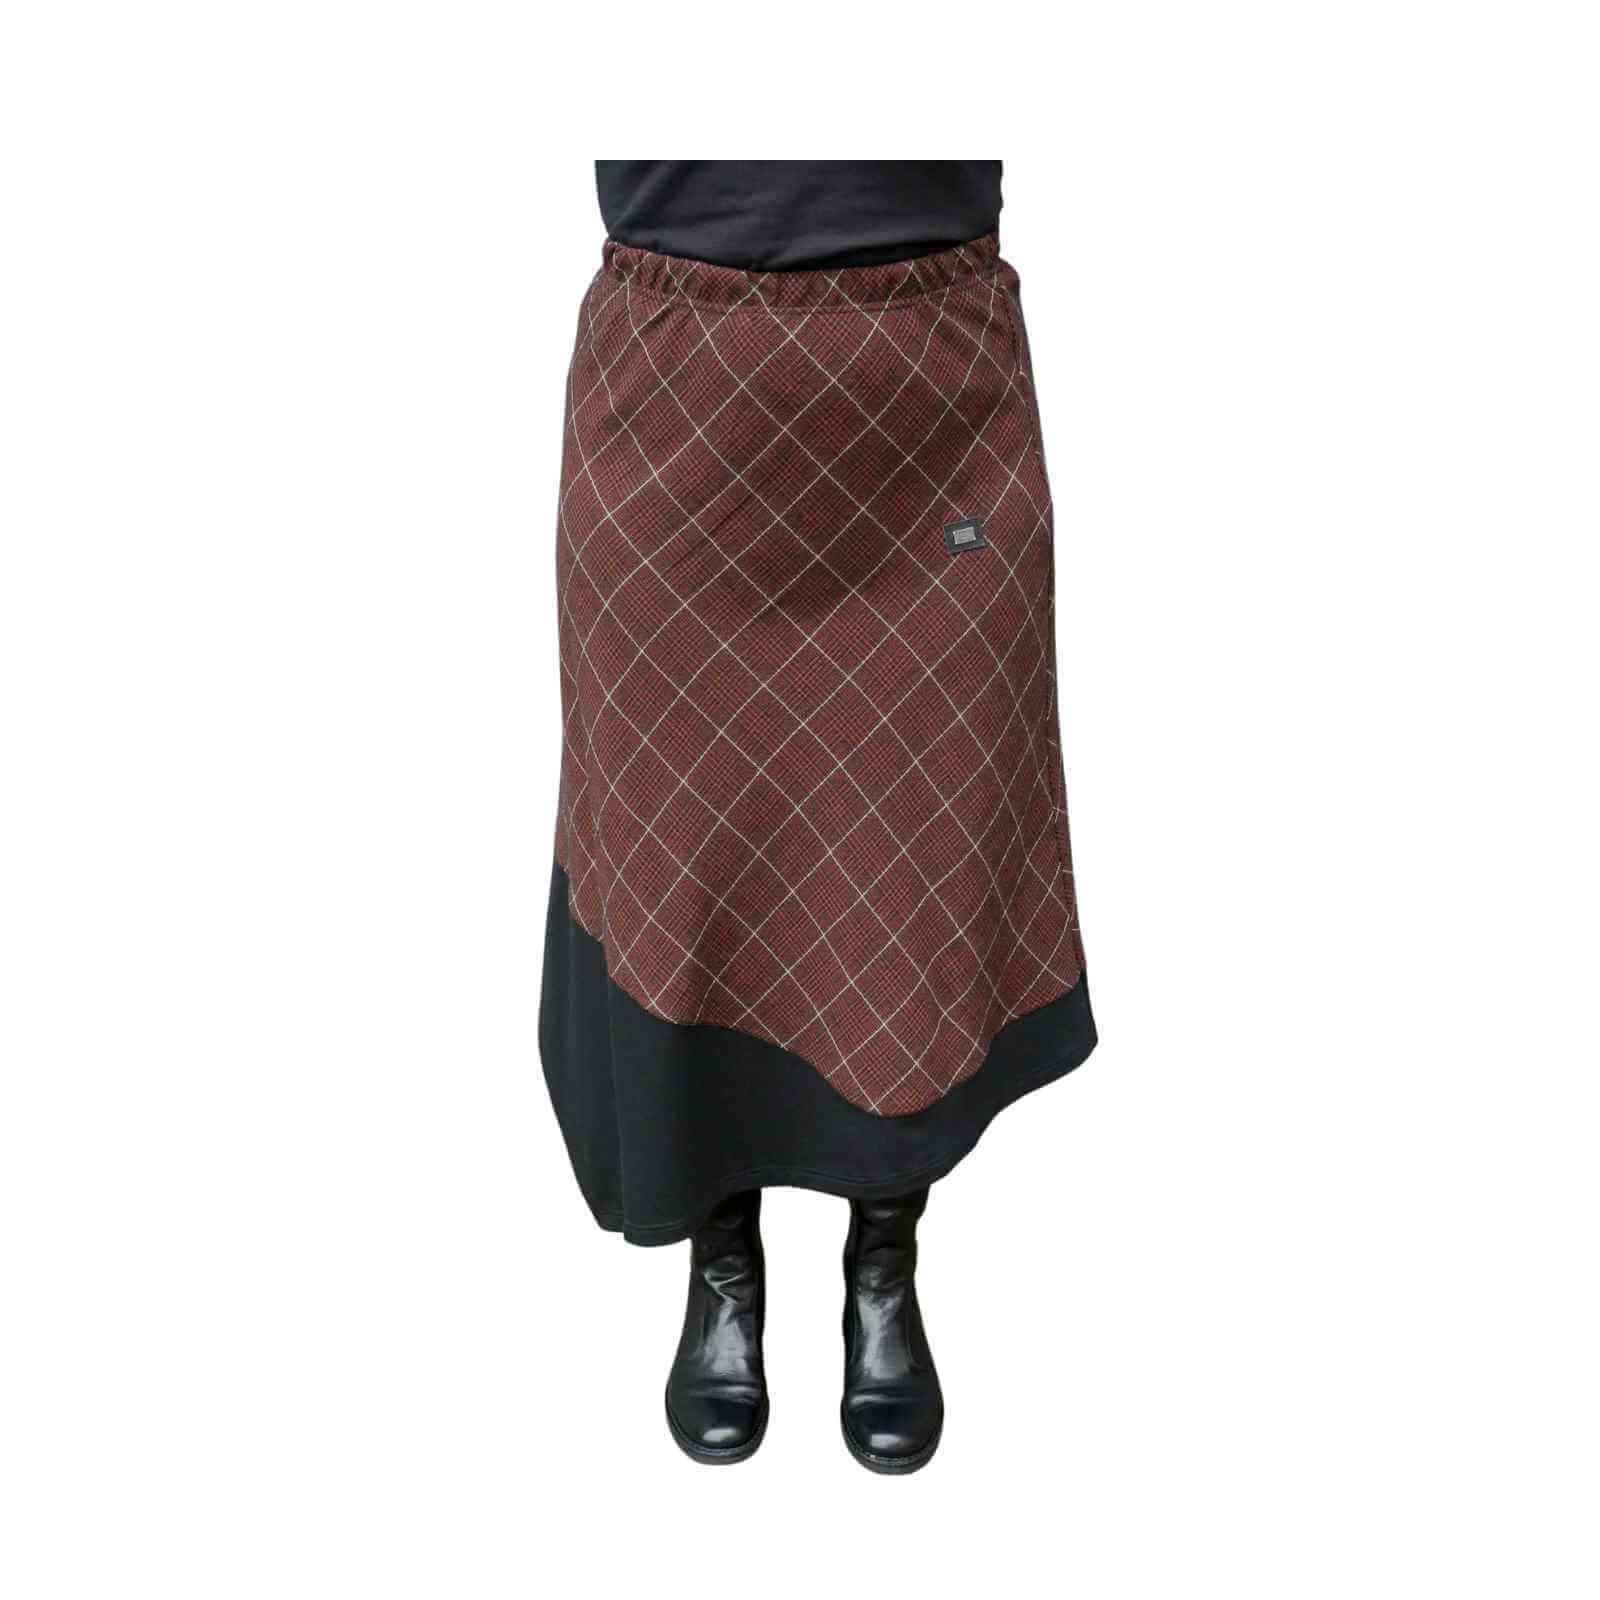 Ternet nederdel i brune/paprika farvet tern og sort kant fra E-Avantgarde